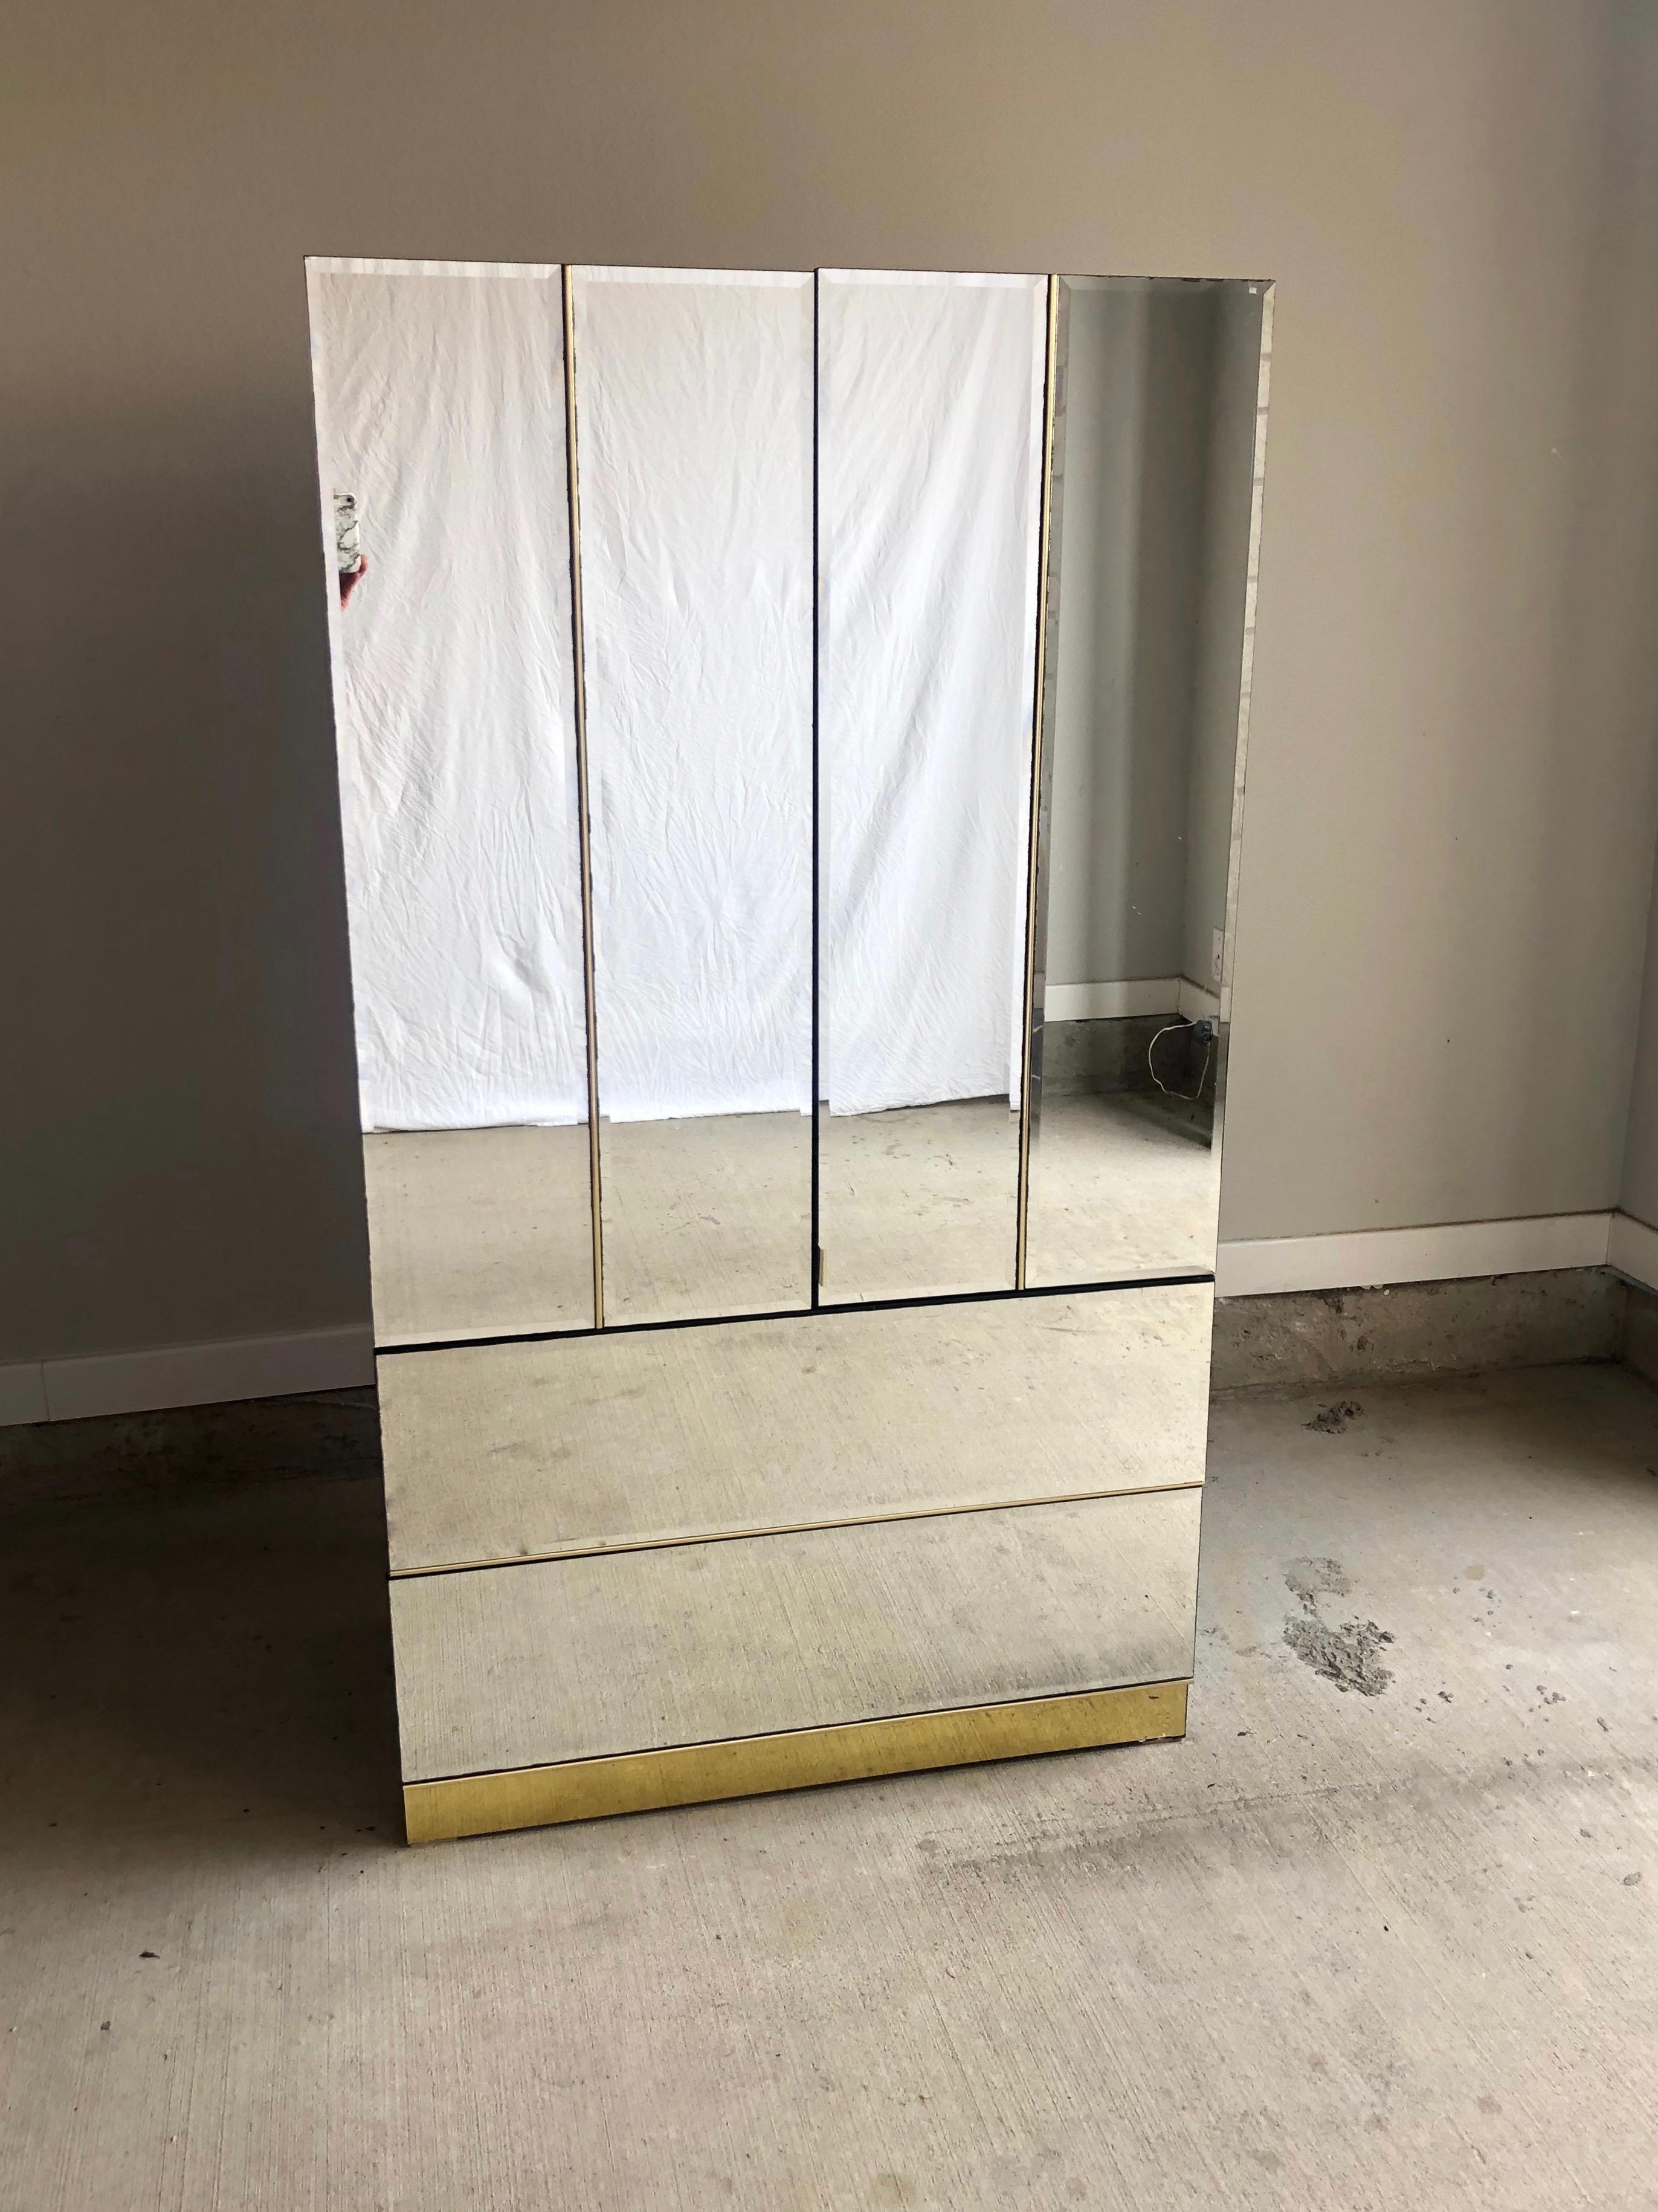 stanley monarch mirror closet door